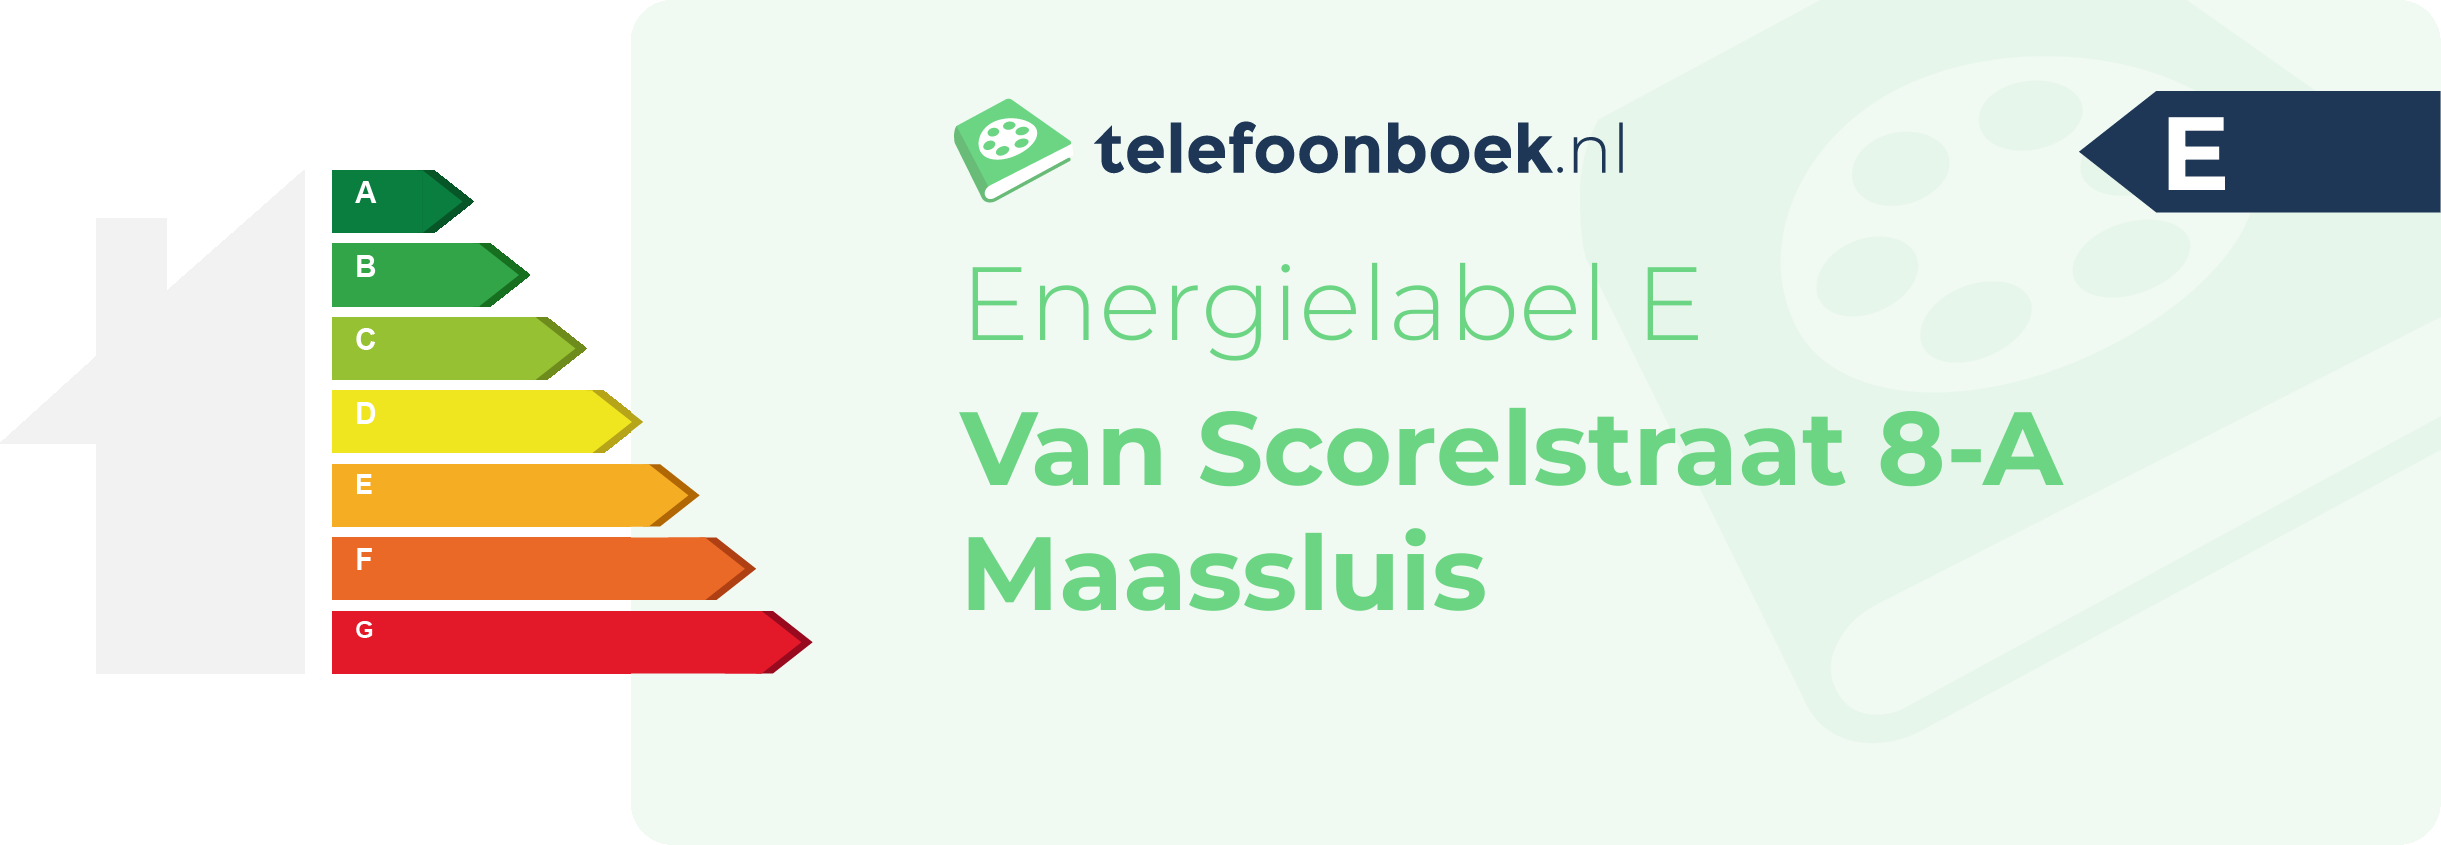 Energielabel Van Scorelstraat 8-A Maassluis